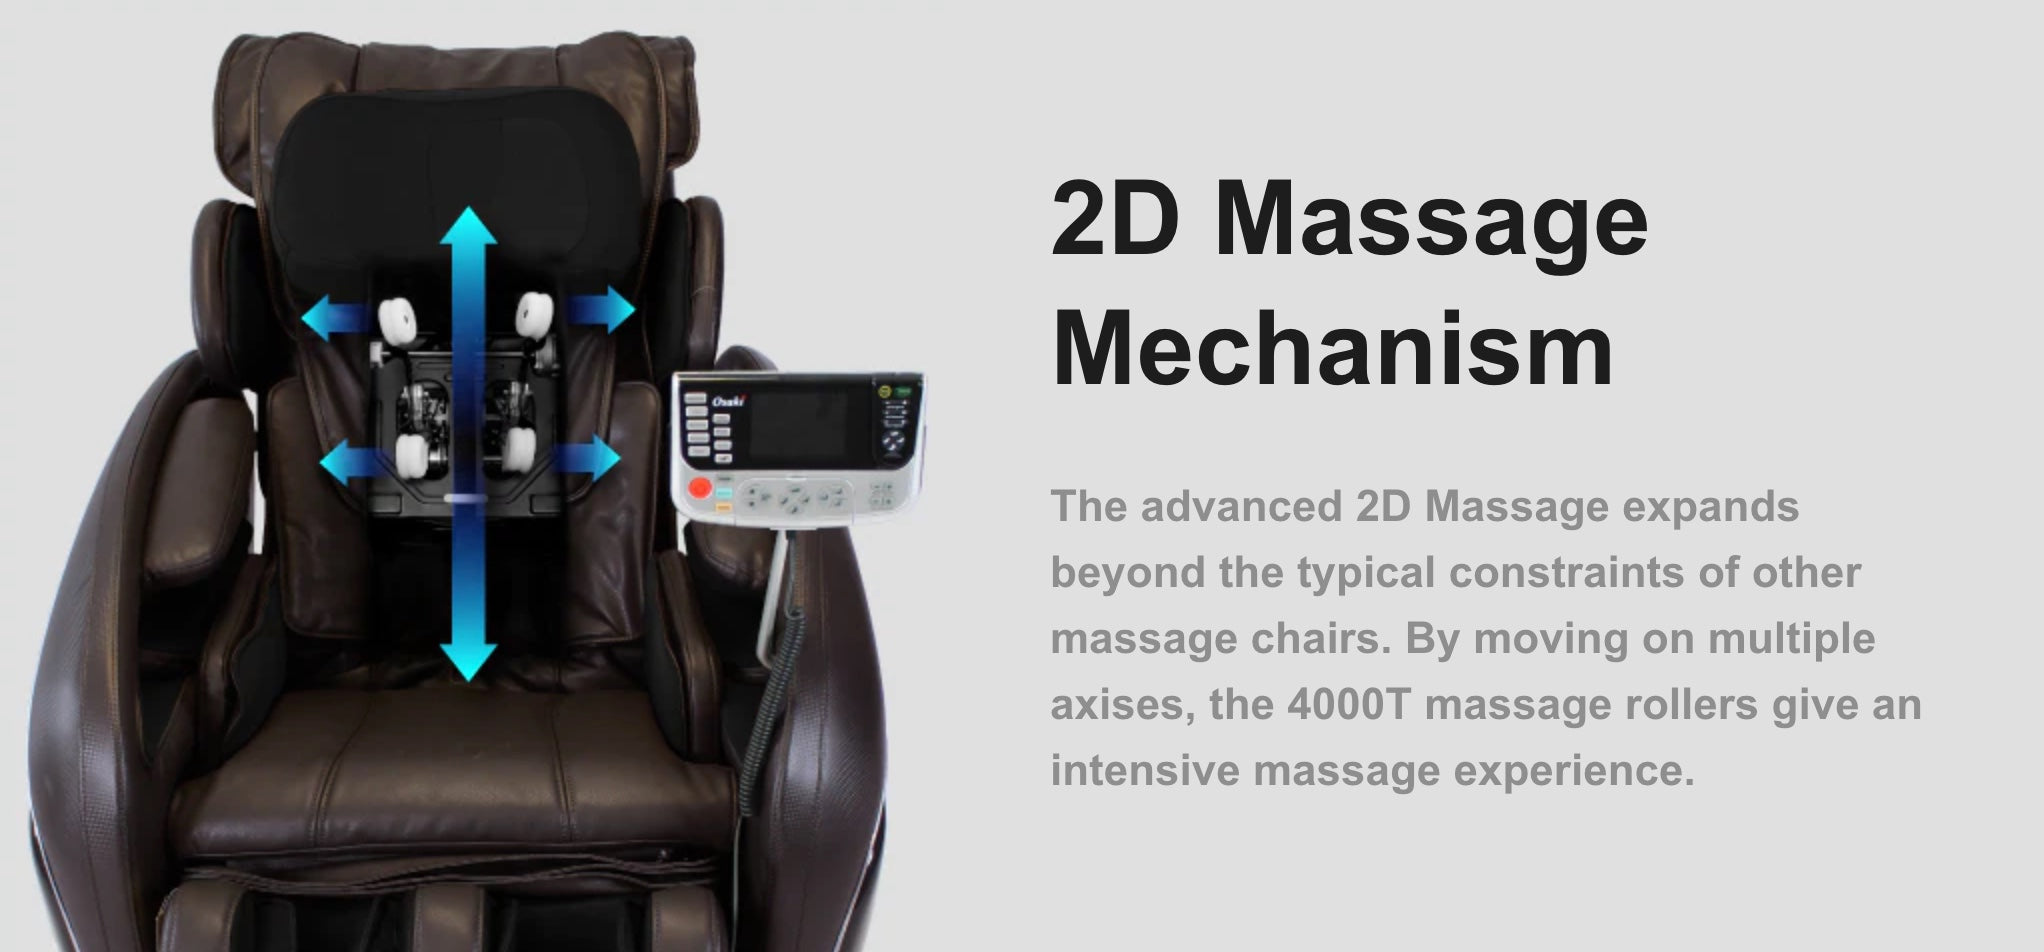 2D Massage Mechanism